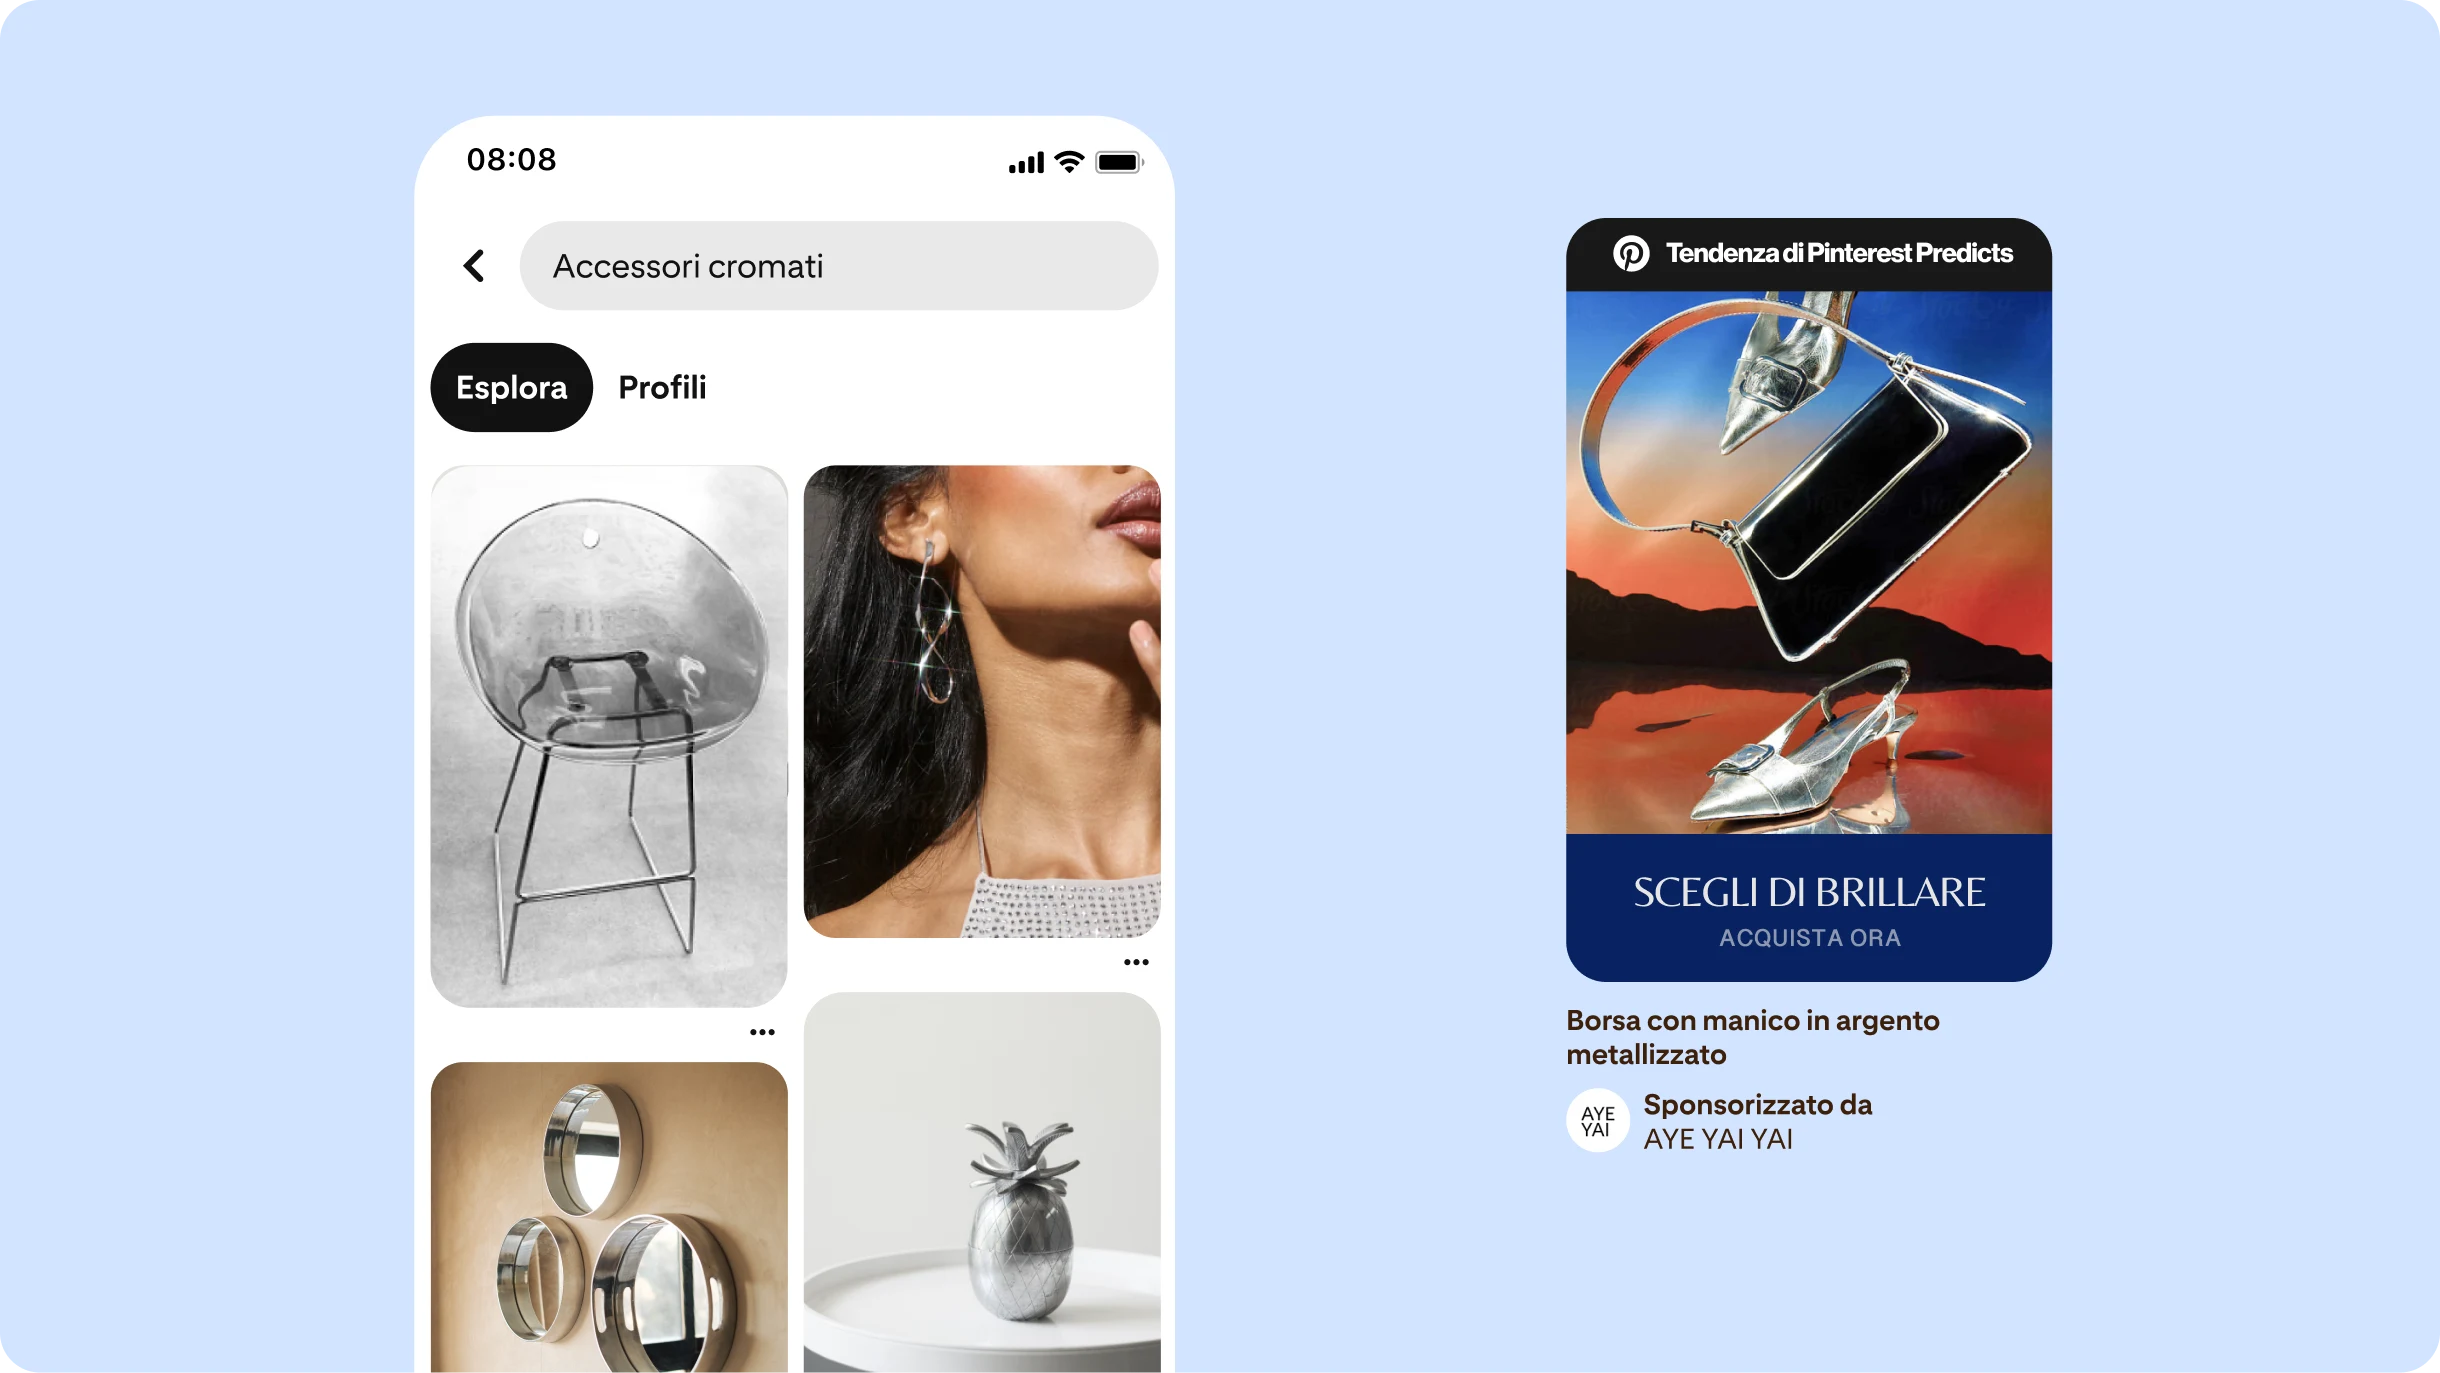 Un feed di Pinterest con la scritta "Accessori cromati" nella barra di ricerca e vari Pin con accessori e mobili cromati. A destra, un annuncio in formato Pin con la scritta "Scegli di brillare".